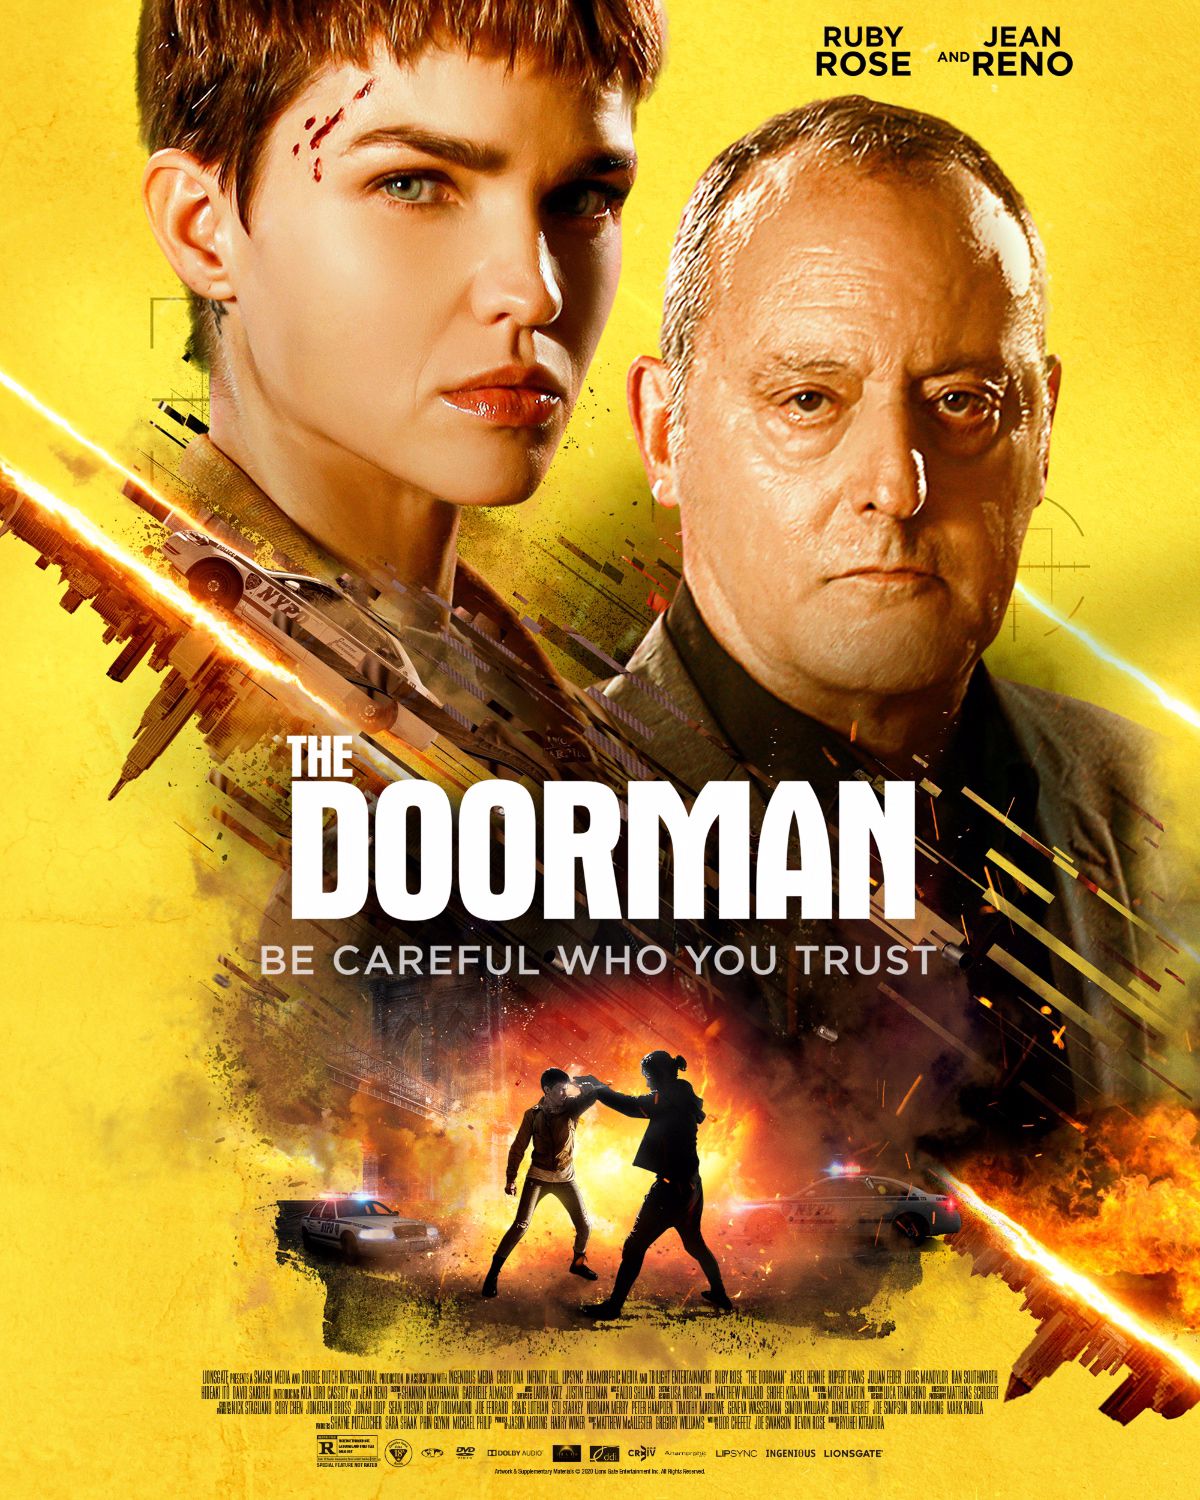 The Doorman Image 8